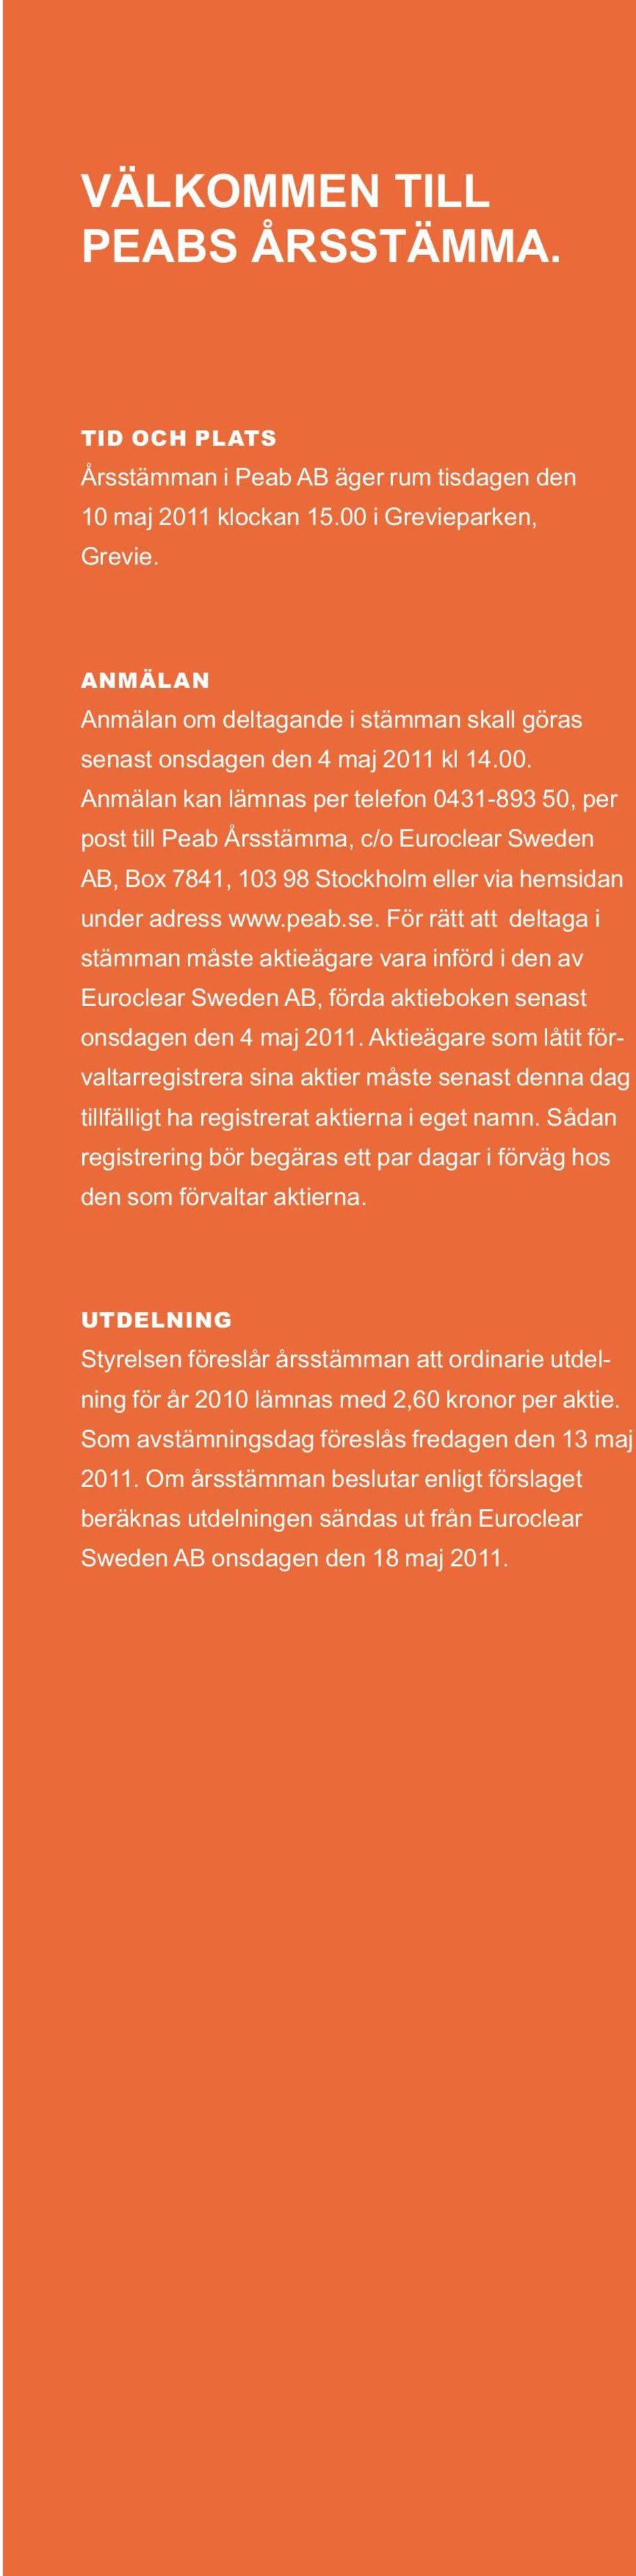 Anmälan kan lämnas per telefon 0431-893 50, per post till Peab Årsstämma, c/o Euroclear Sweden AB, Box 7841, 103 98 Stockholm eller via hemsidan under adress www.peab.se.